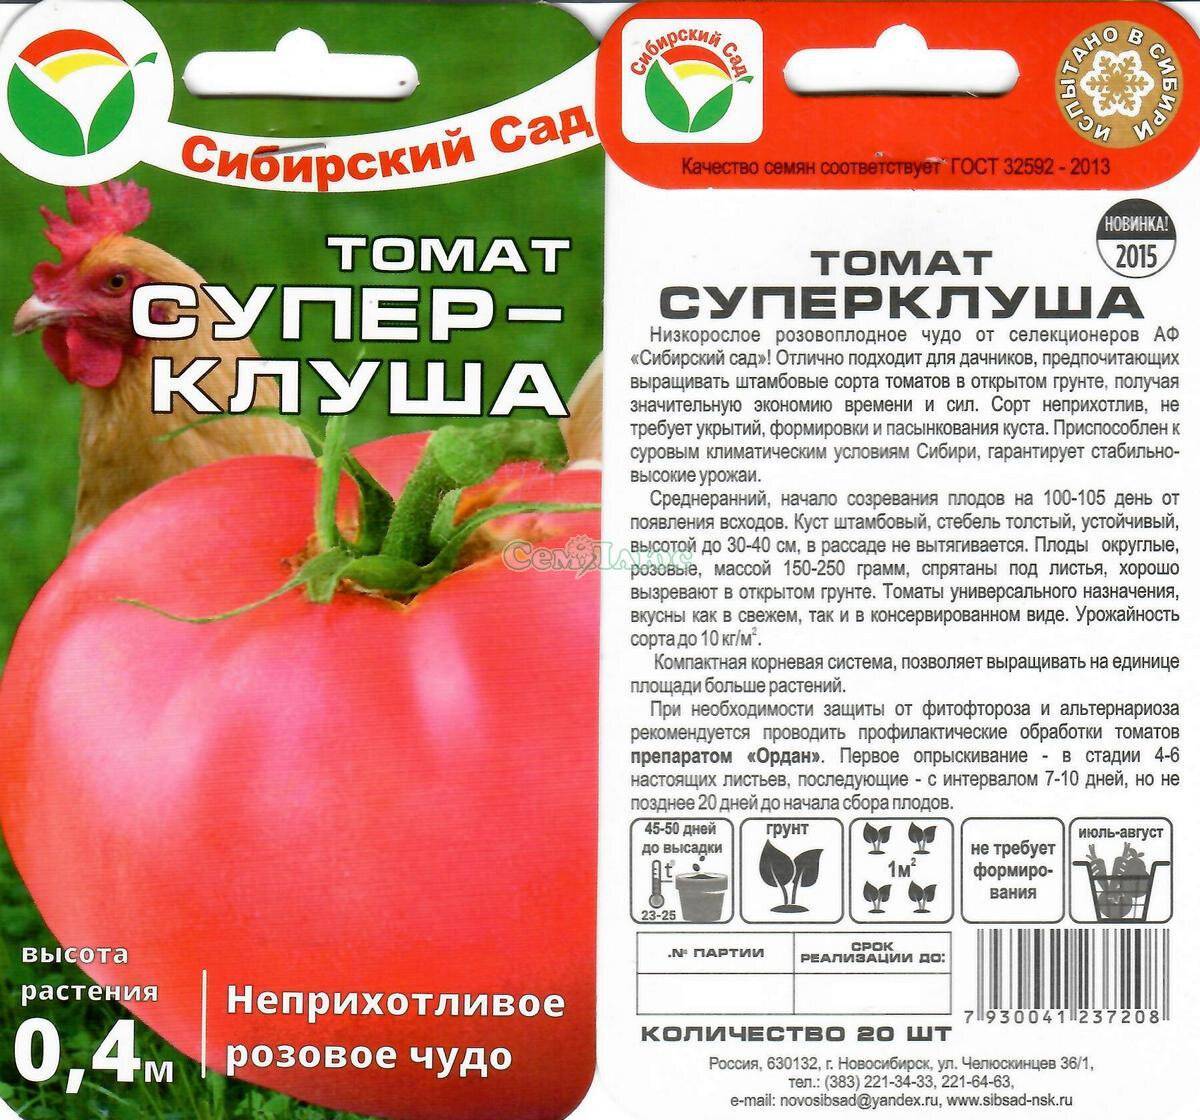 Лучшие сорта помидоров на 2021-2022 год по отзывам садоводов